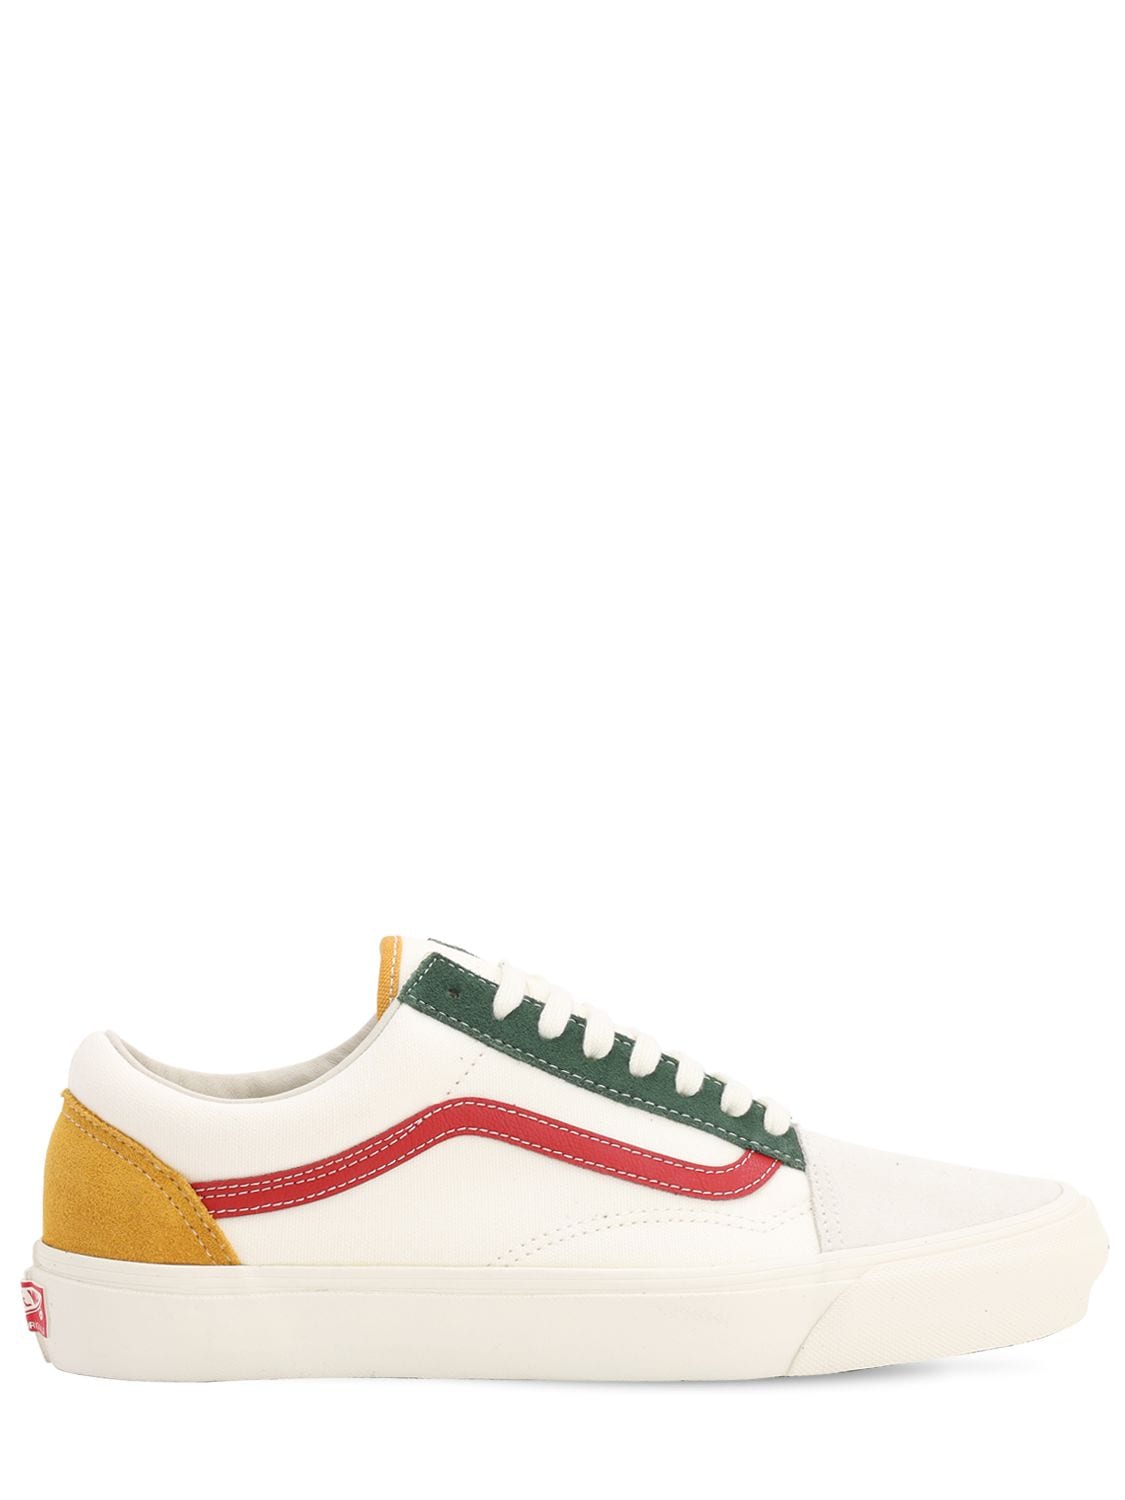 Vans “ua Og Old Skool Lx”运动鞋 In White,red,green